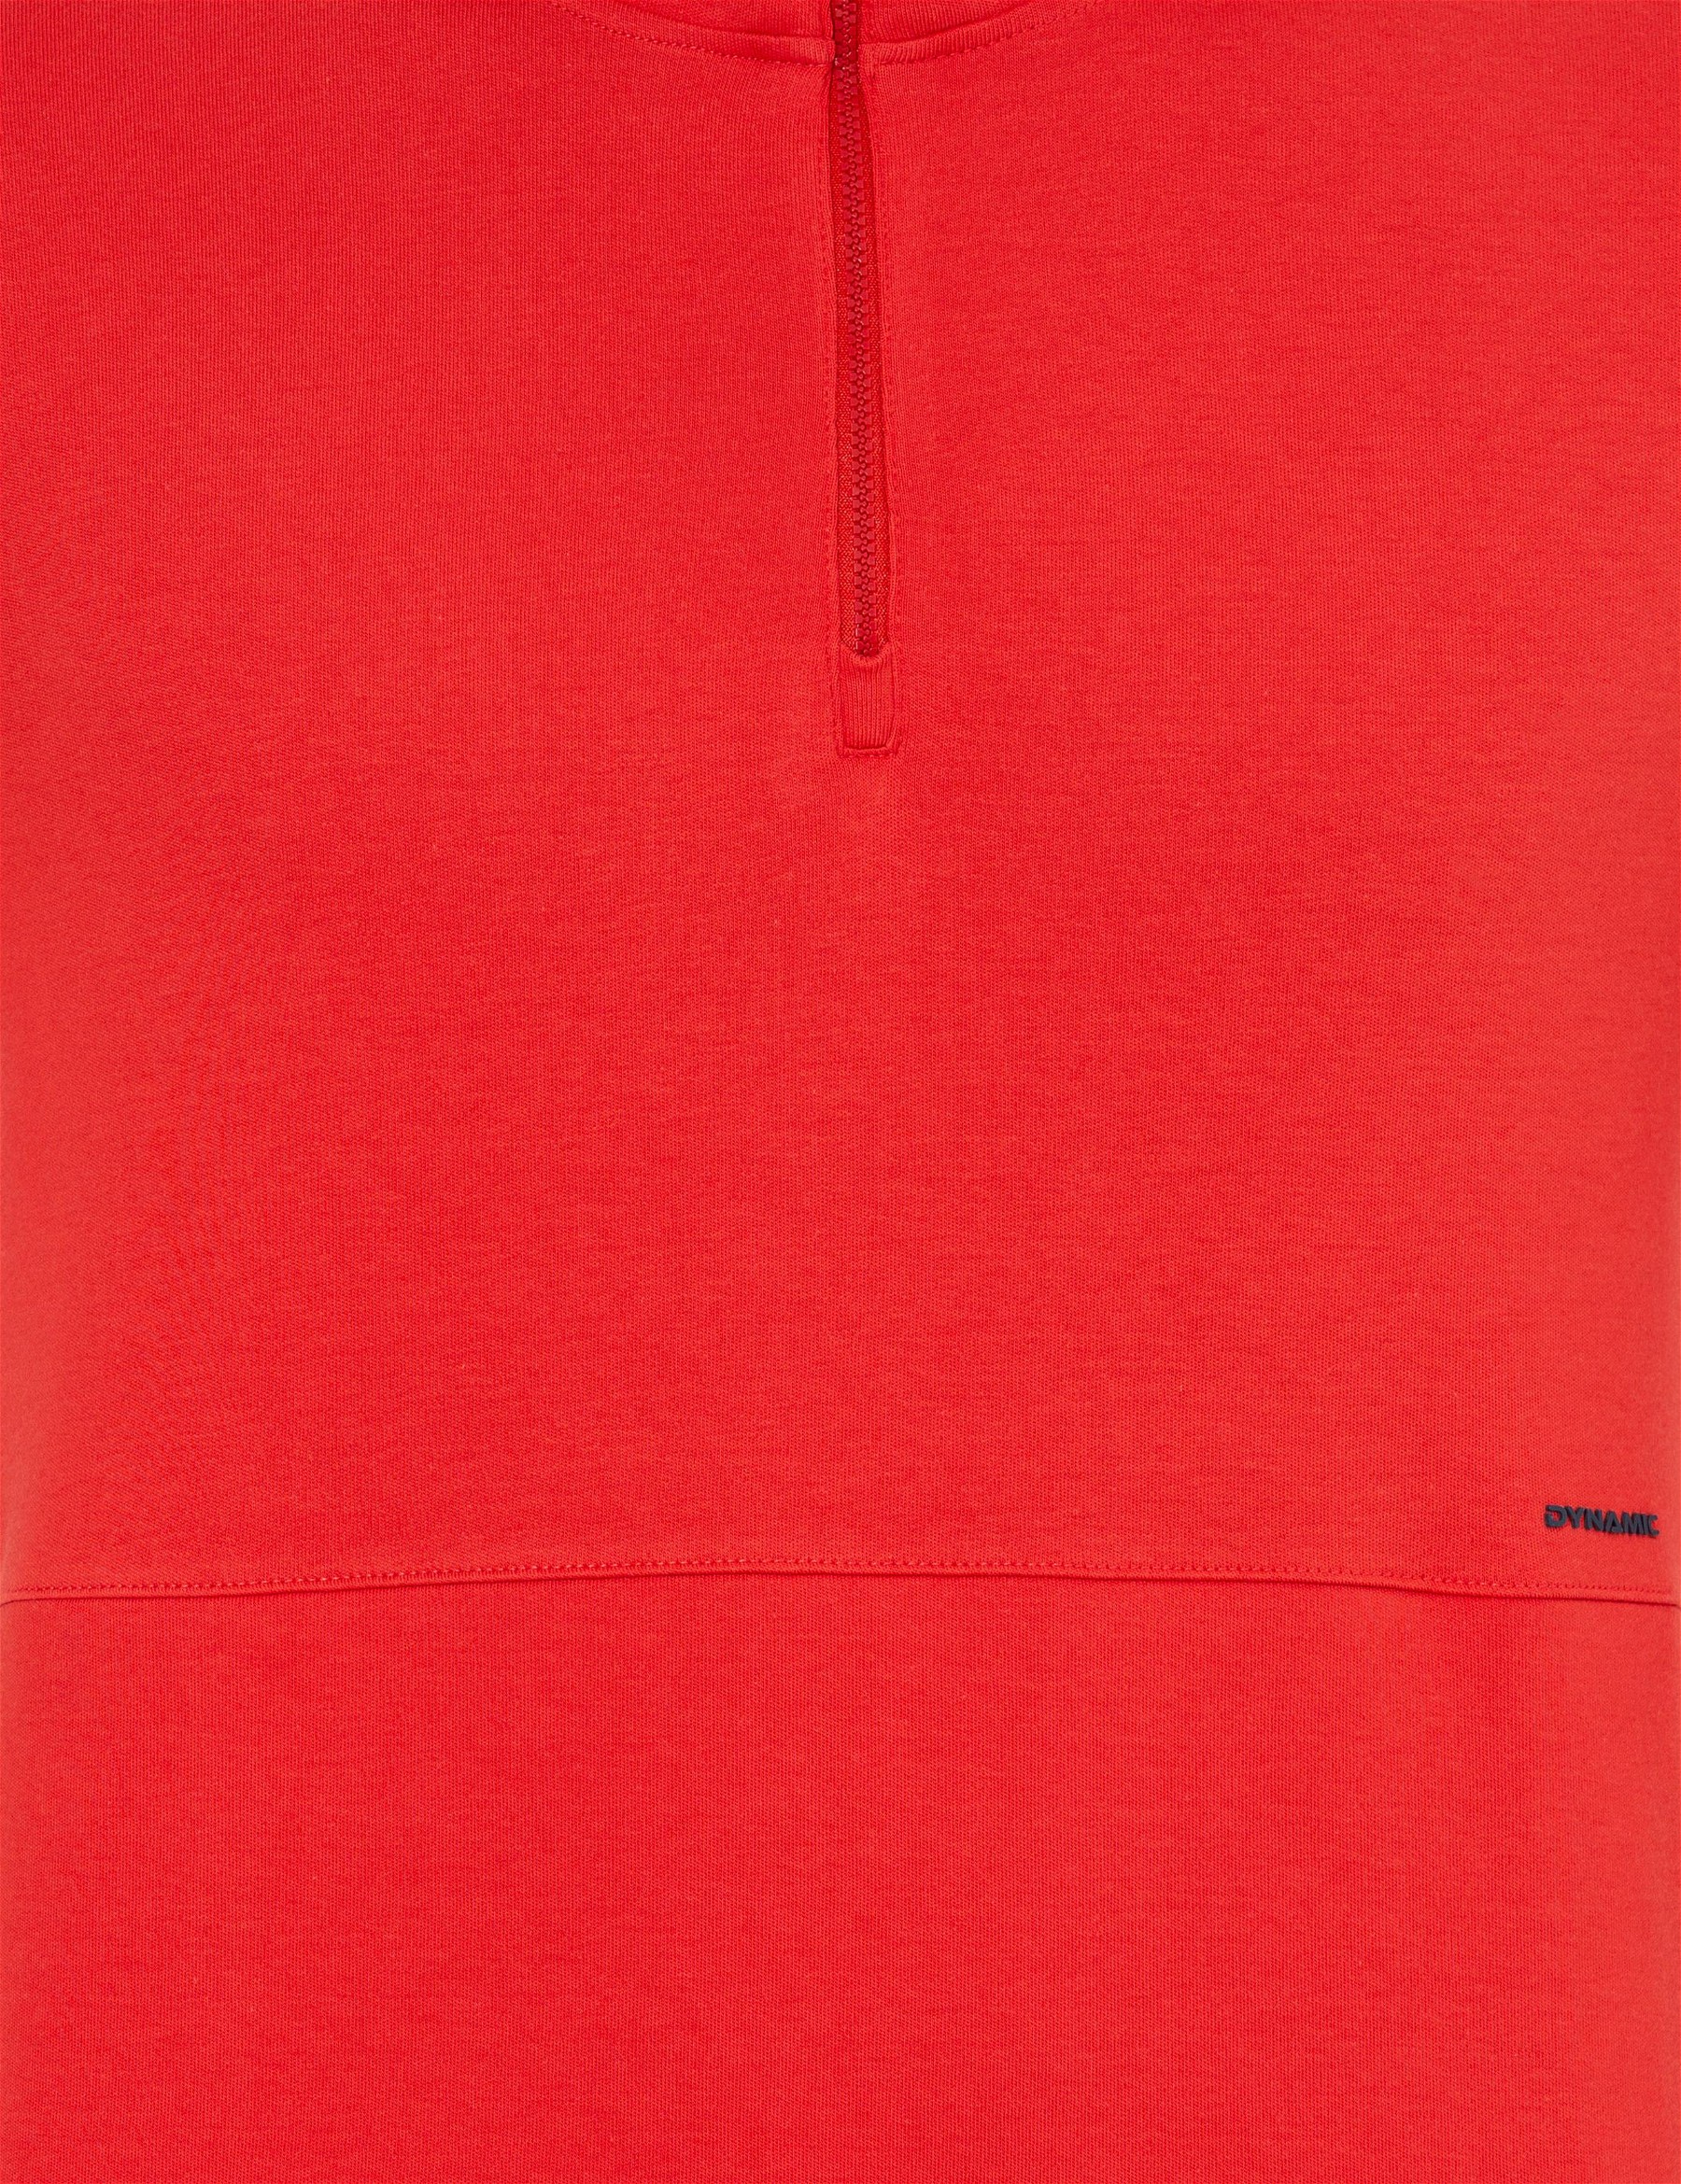 Kırmızı Kapüşonlu Sweatshirt